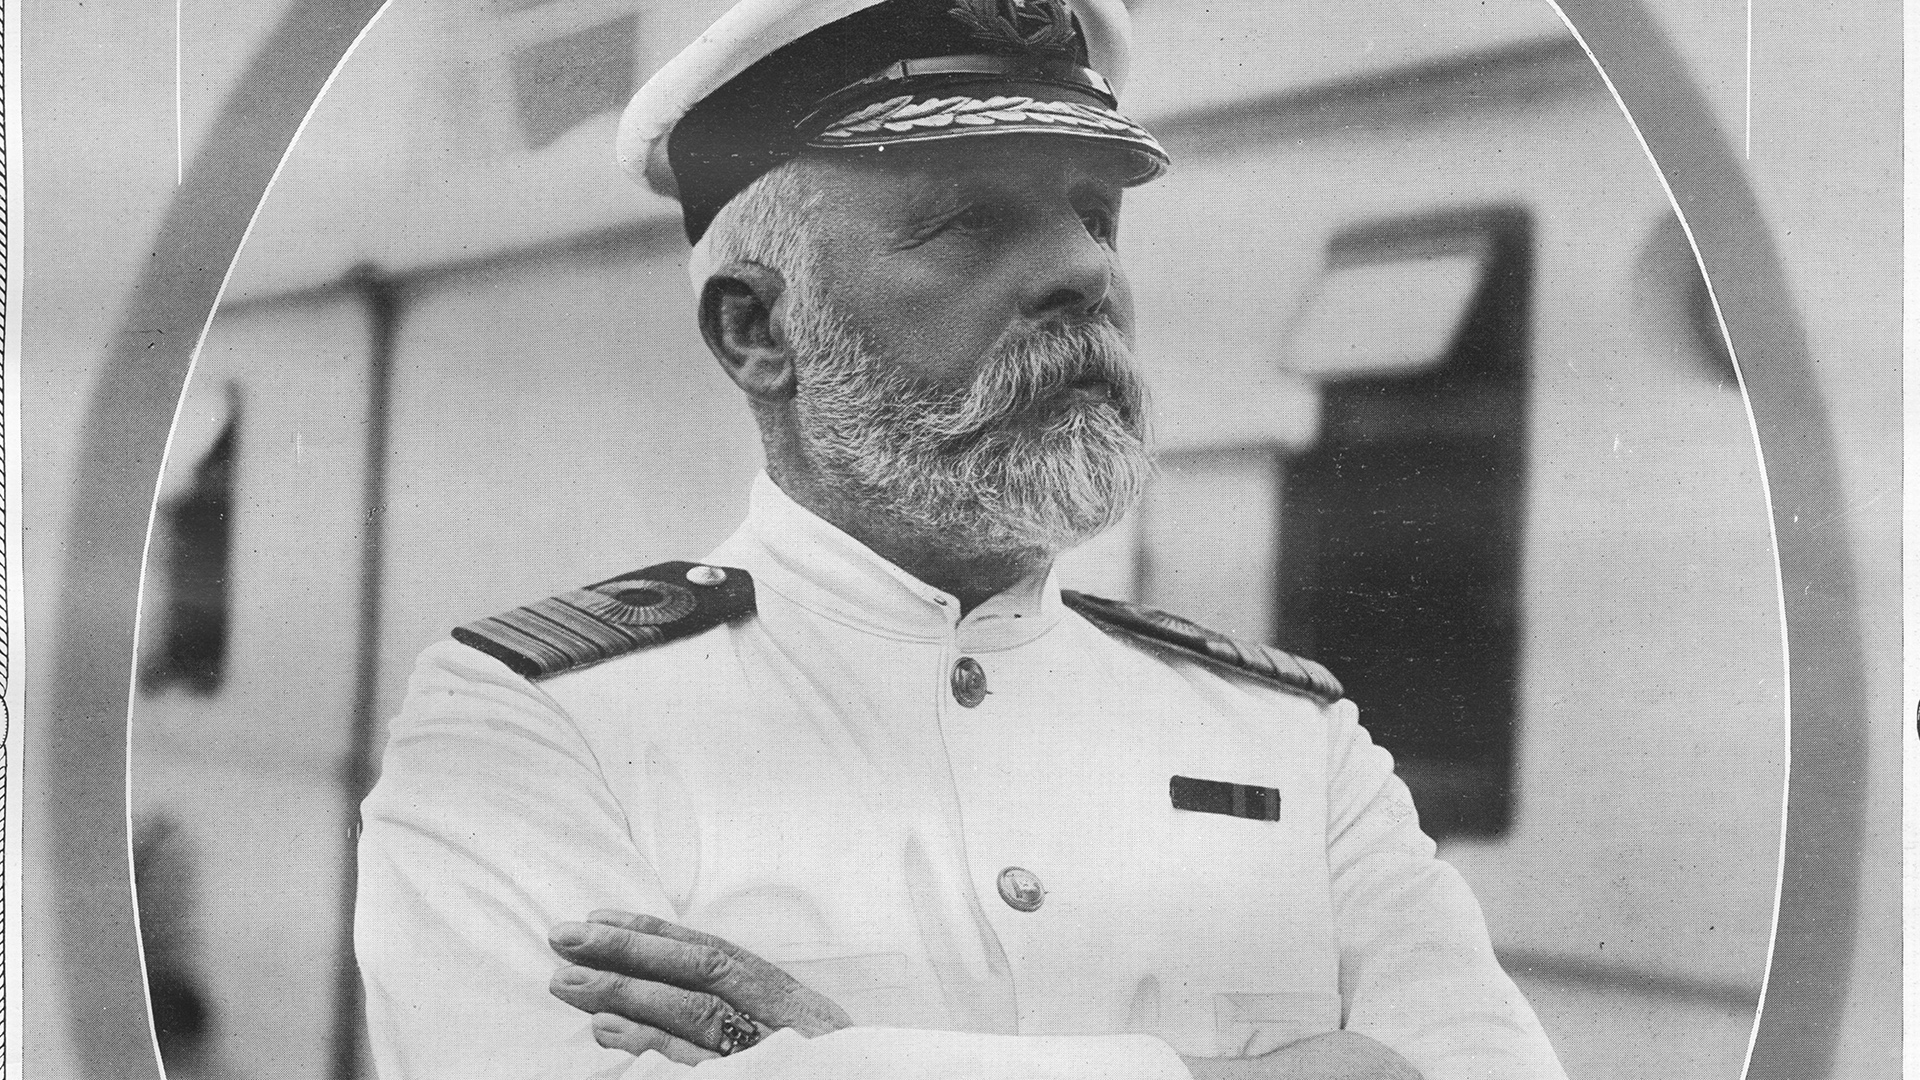 El capitán Smith se jubilaría después de este viaje. Tenía 62 años y más de tres décadas de servicio (Photo by Universal Images Group/Getty Images)